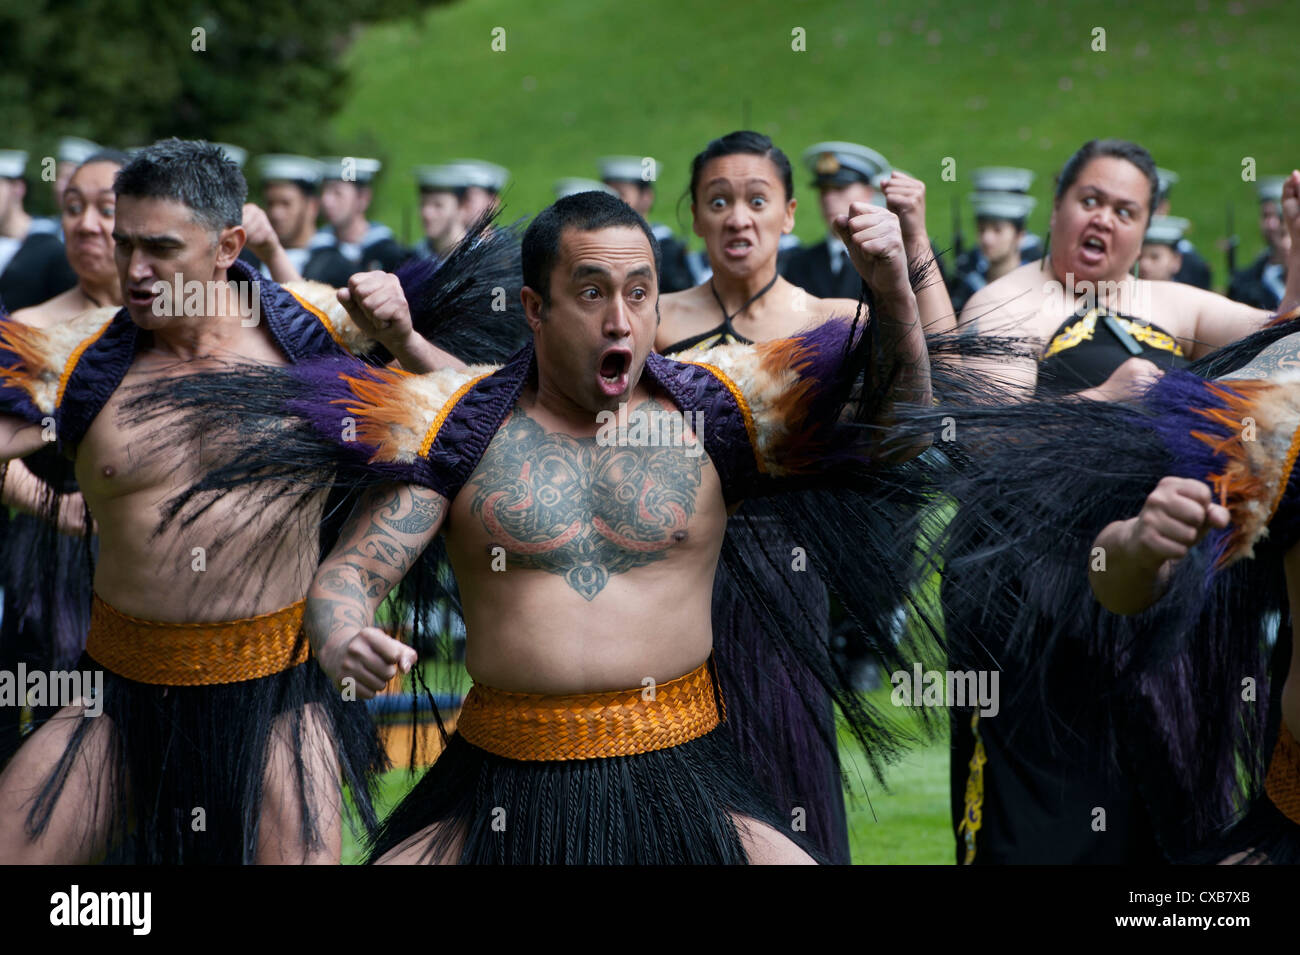 Maori-Krieger Vorform eines Haka Tanz des Willkommens für US-Verteidigungsminister Leon Panetta während einer Zeremonie der Powhiri 21. September 2012 in Auckland, Neuseeland. Die Zeremonie ist eine alte Maori Tradition verwendet, um festzustellen, ob Besucher in Frieden oder in feindlicher Absicht kamen. Stockfoto